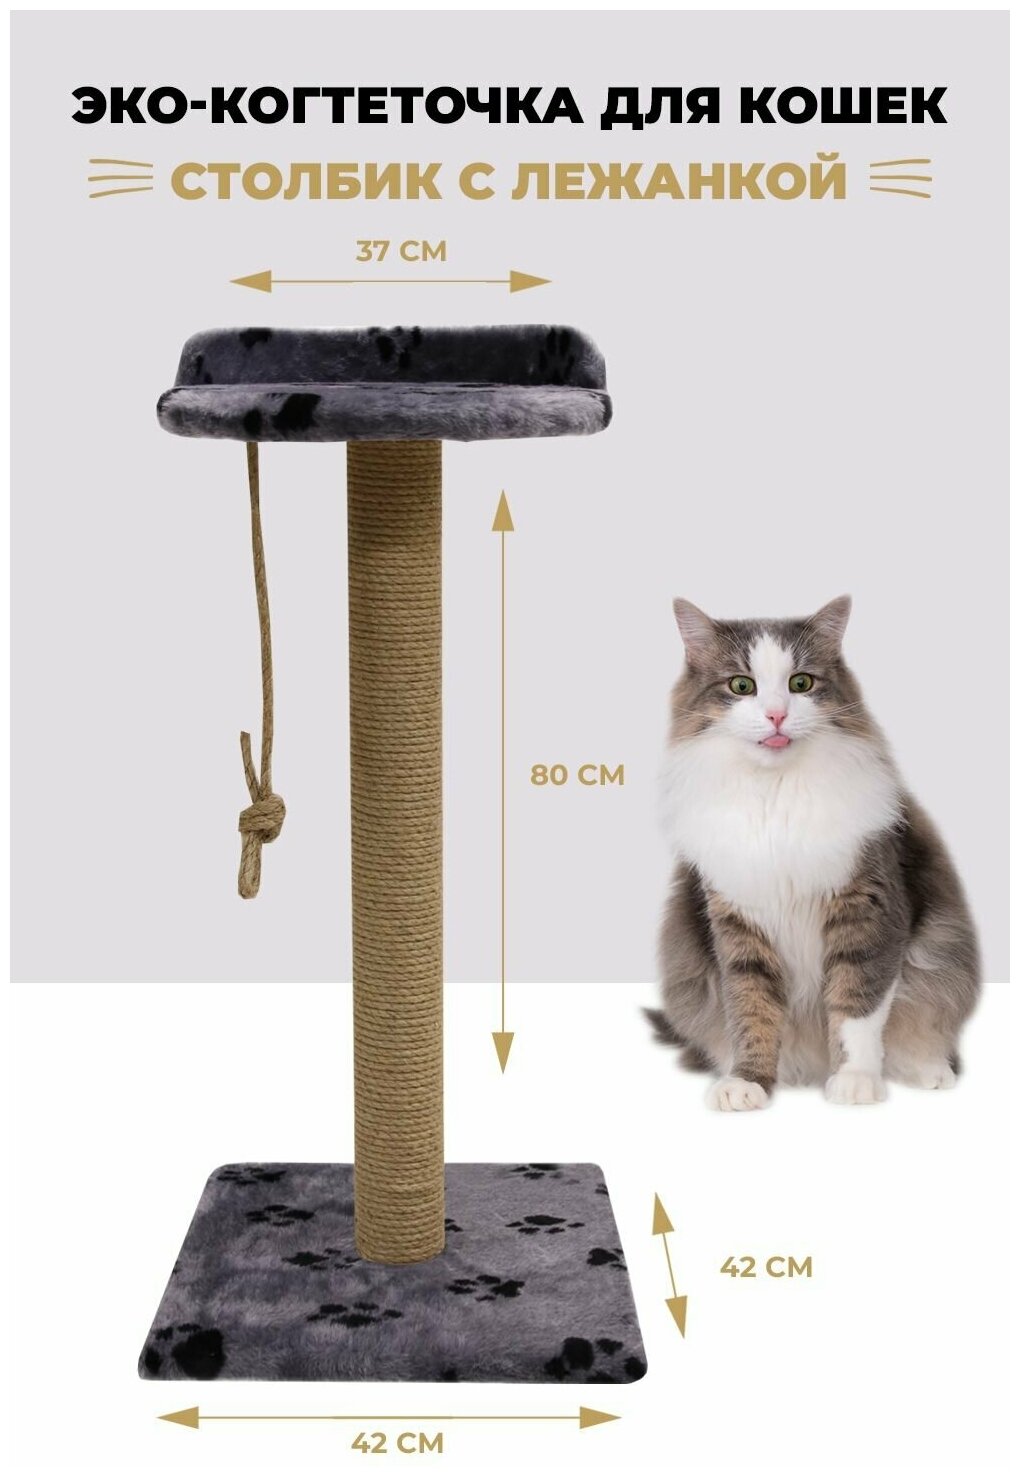 Когтеточка столбик с лежанкой для кошек с лежанкой высокий 82см.